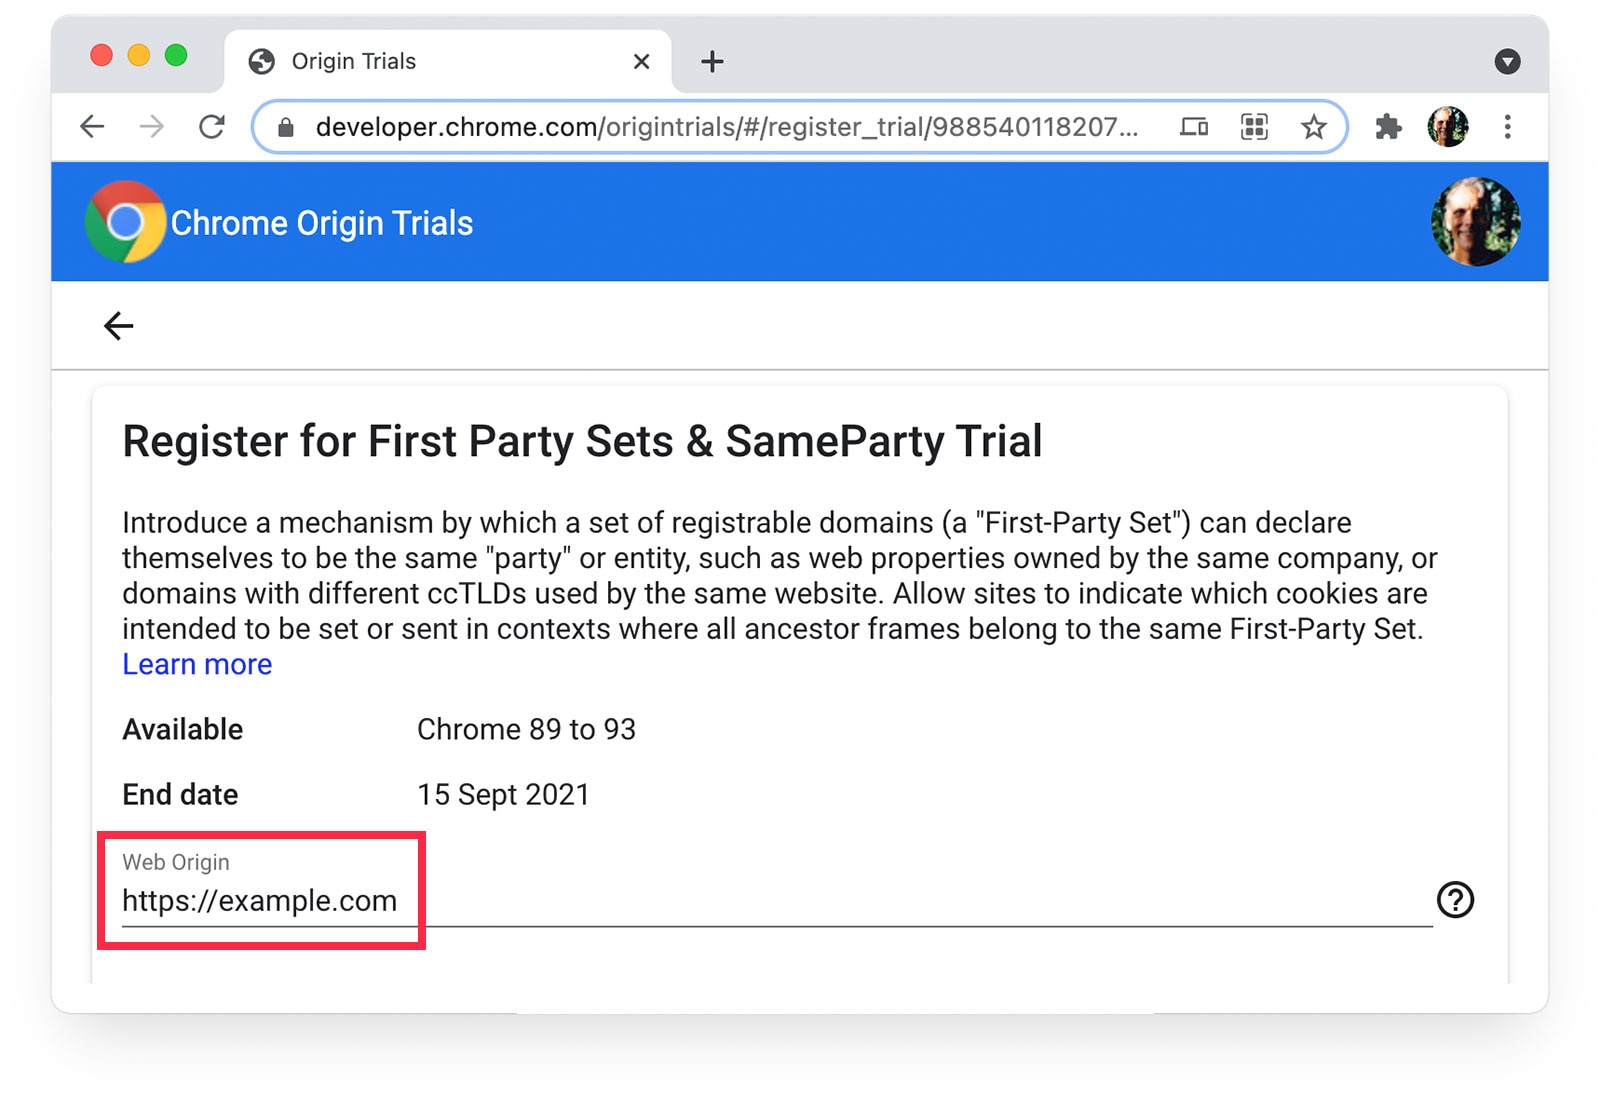 Die Seite zu den Chrome-Ursprungstests, auf der https://beispiel.de als Webursprung ausgewählt ist.